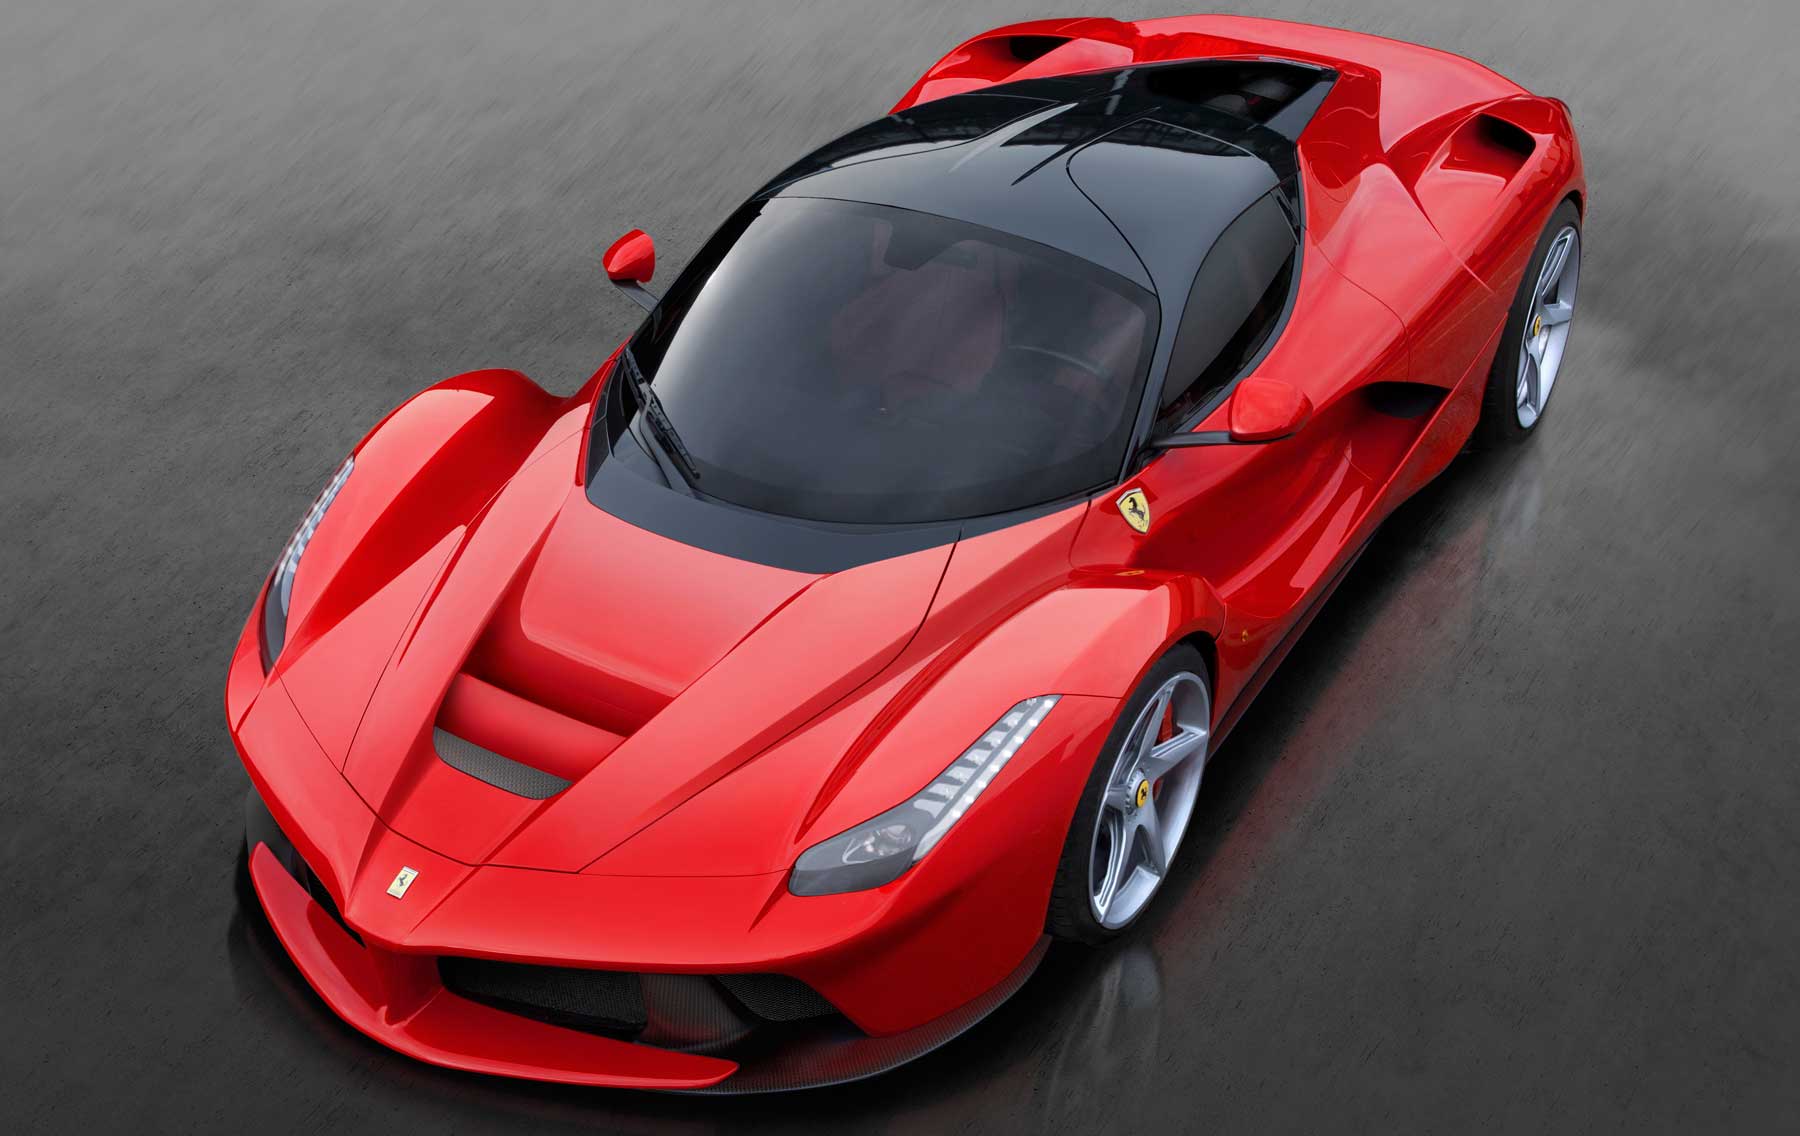 Ferrari è pronta ad espandere la partnership con Apple, l'iPhone verrà mai integrato nelle nuove vetture?